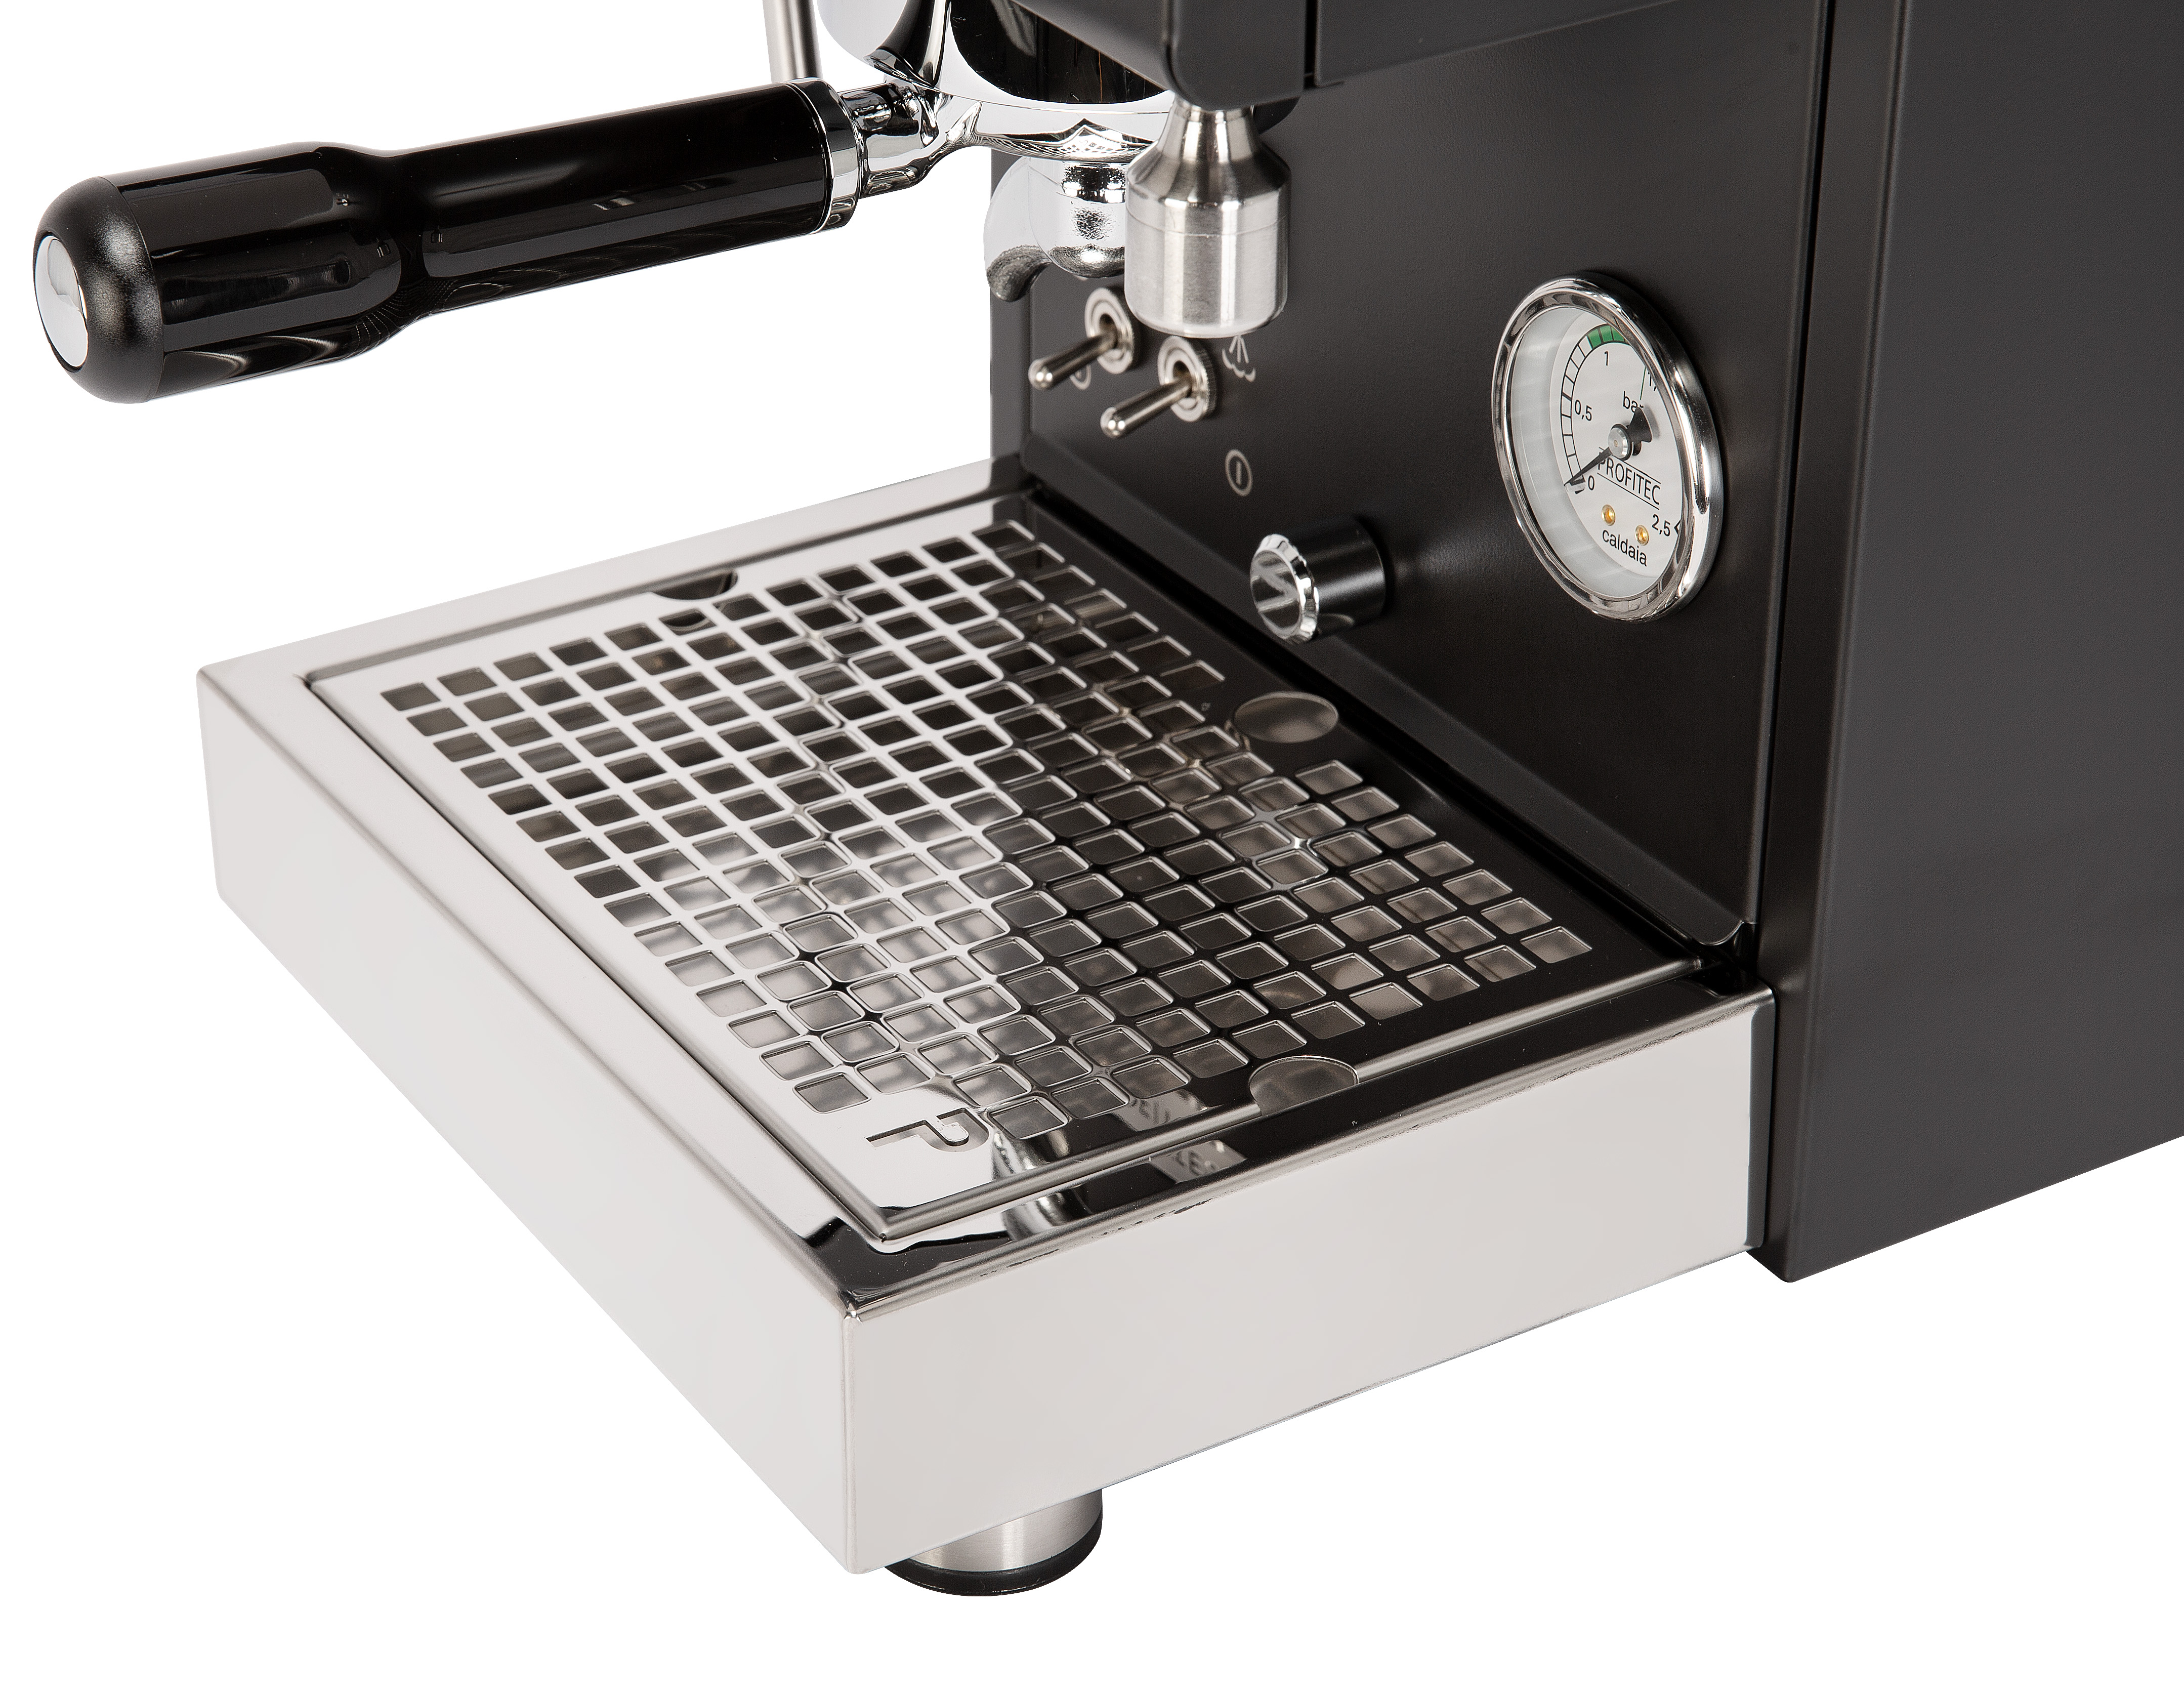 Profitec Pro 300 mattschwarz Dualboiler Espressomaschine